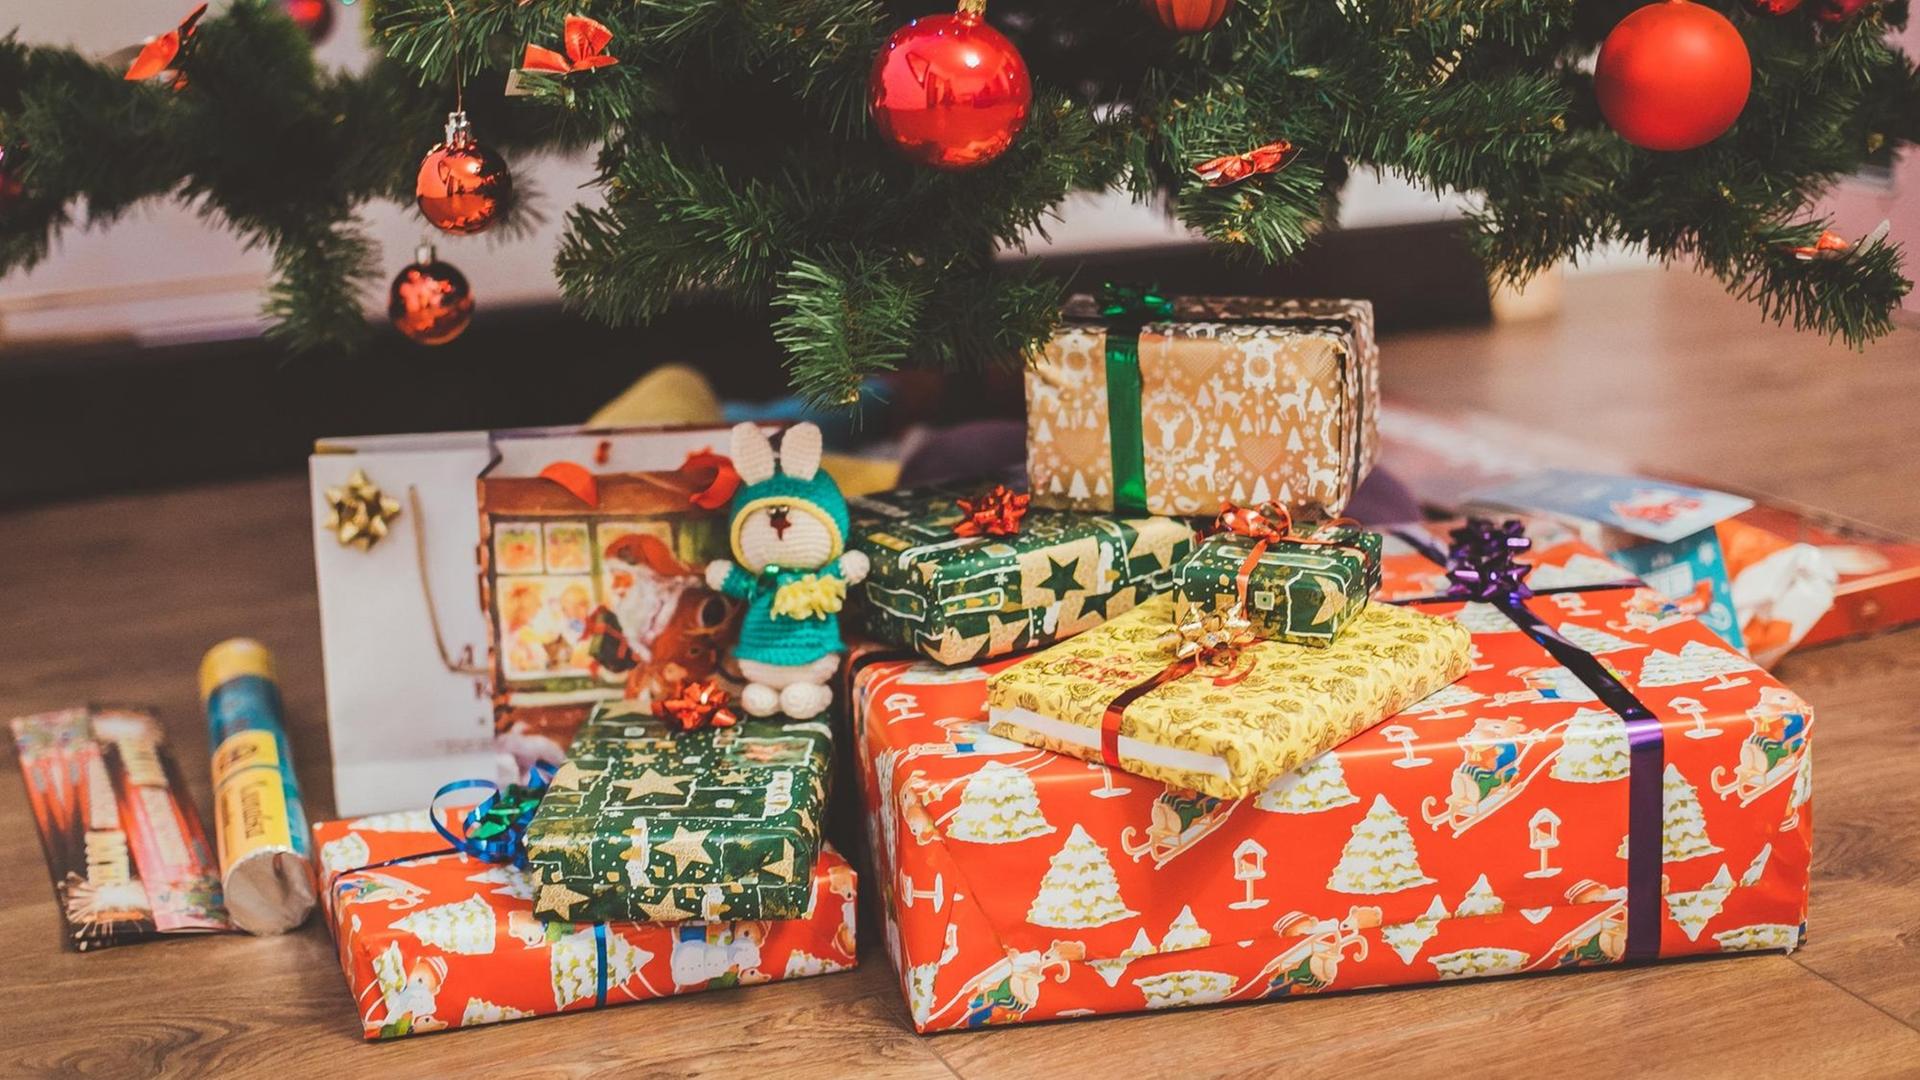 Ein Stapel bunt verpackter Geschenke unter einem geschmückten Weihnachtsbaum.